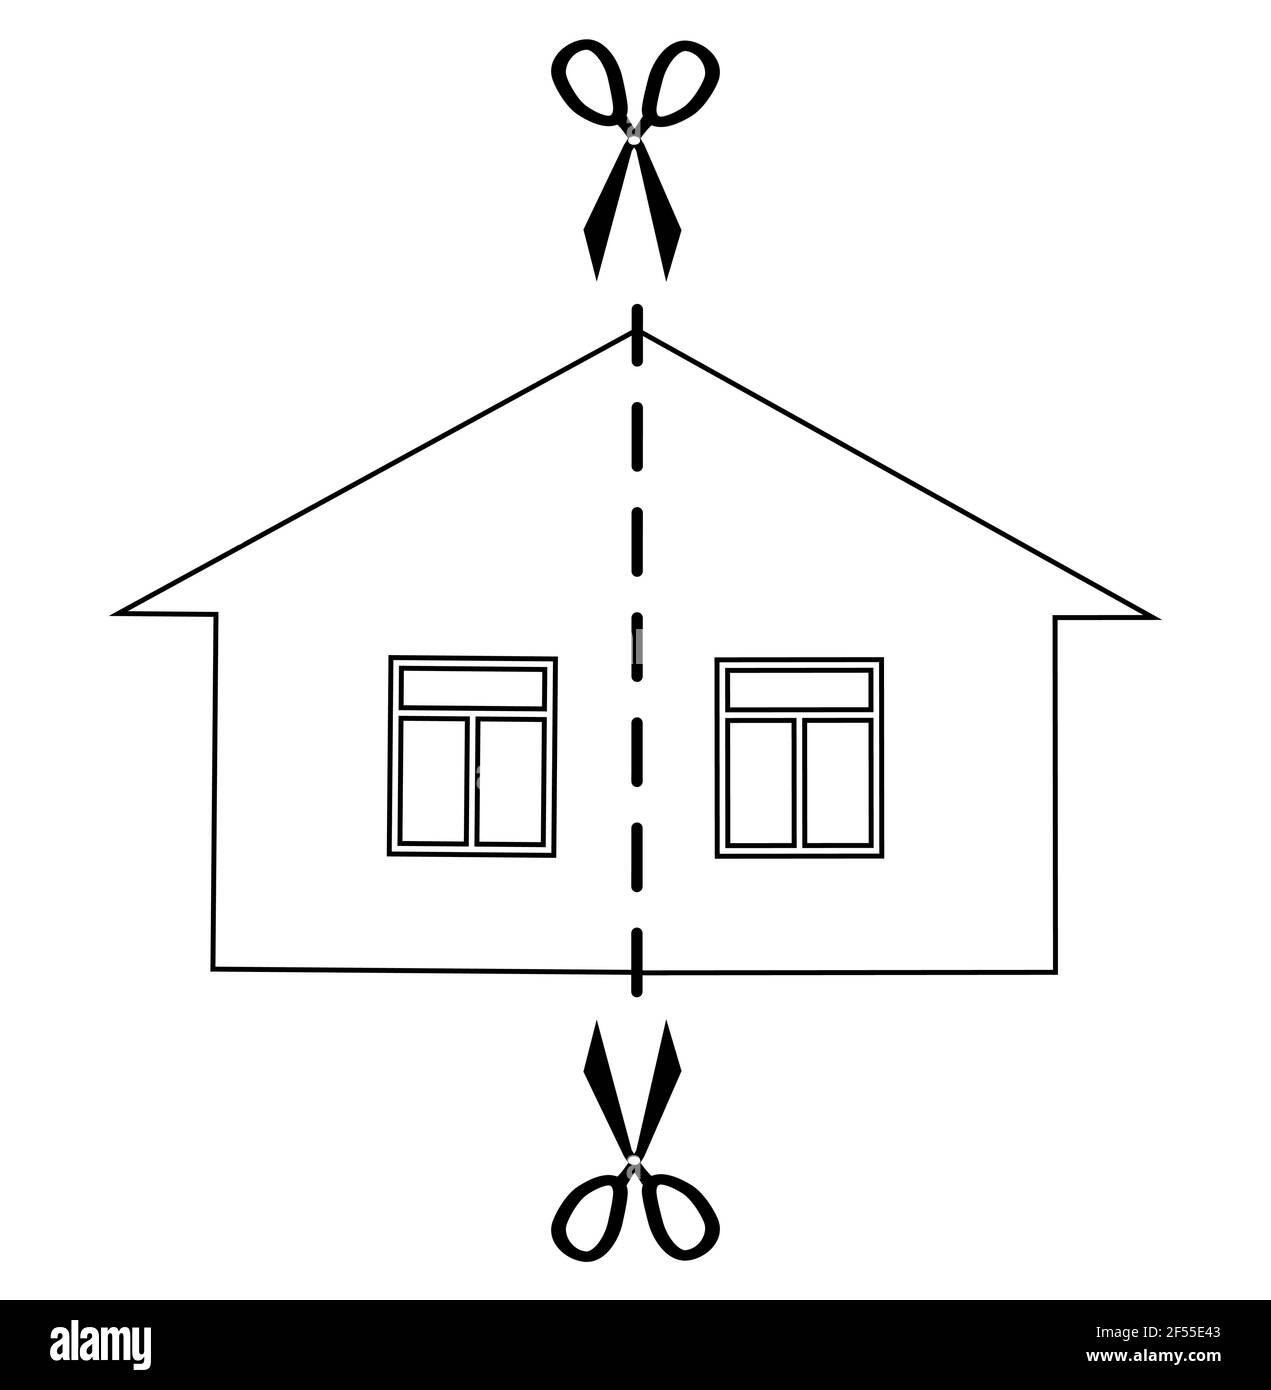 Concetto di divorzio e divisione di proprietà. Immagine vettoriale monocromatica nera tagliata a metà. Illustrazione Vettoriale